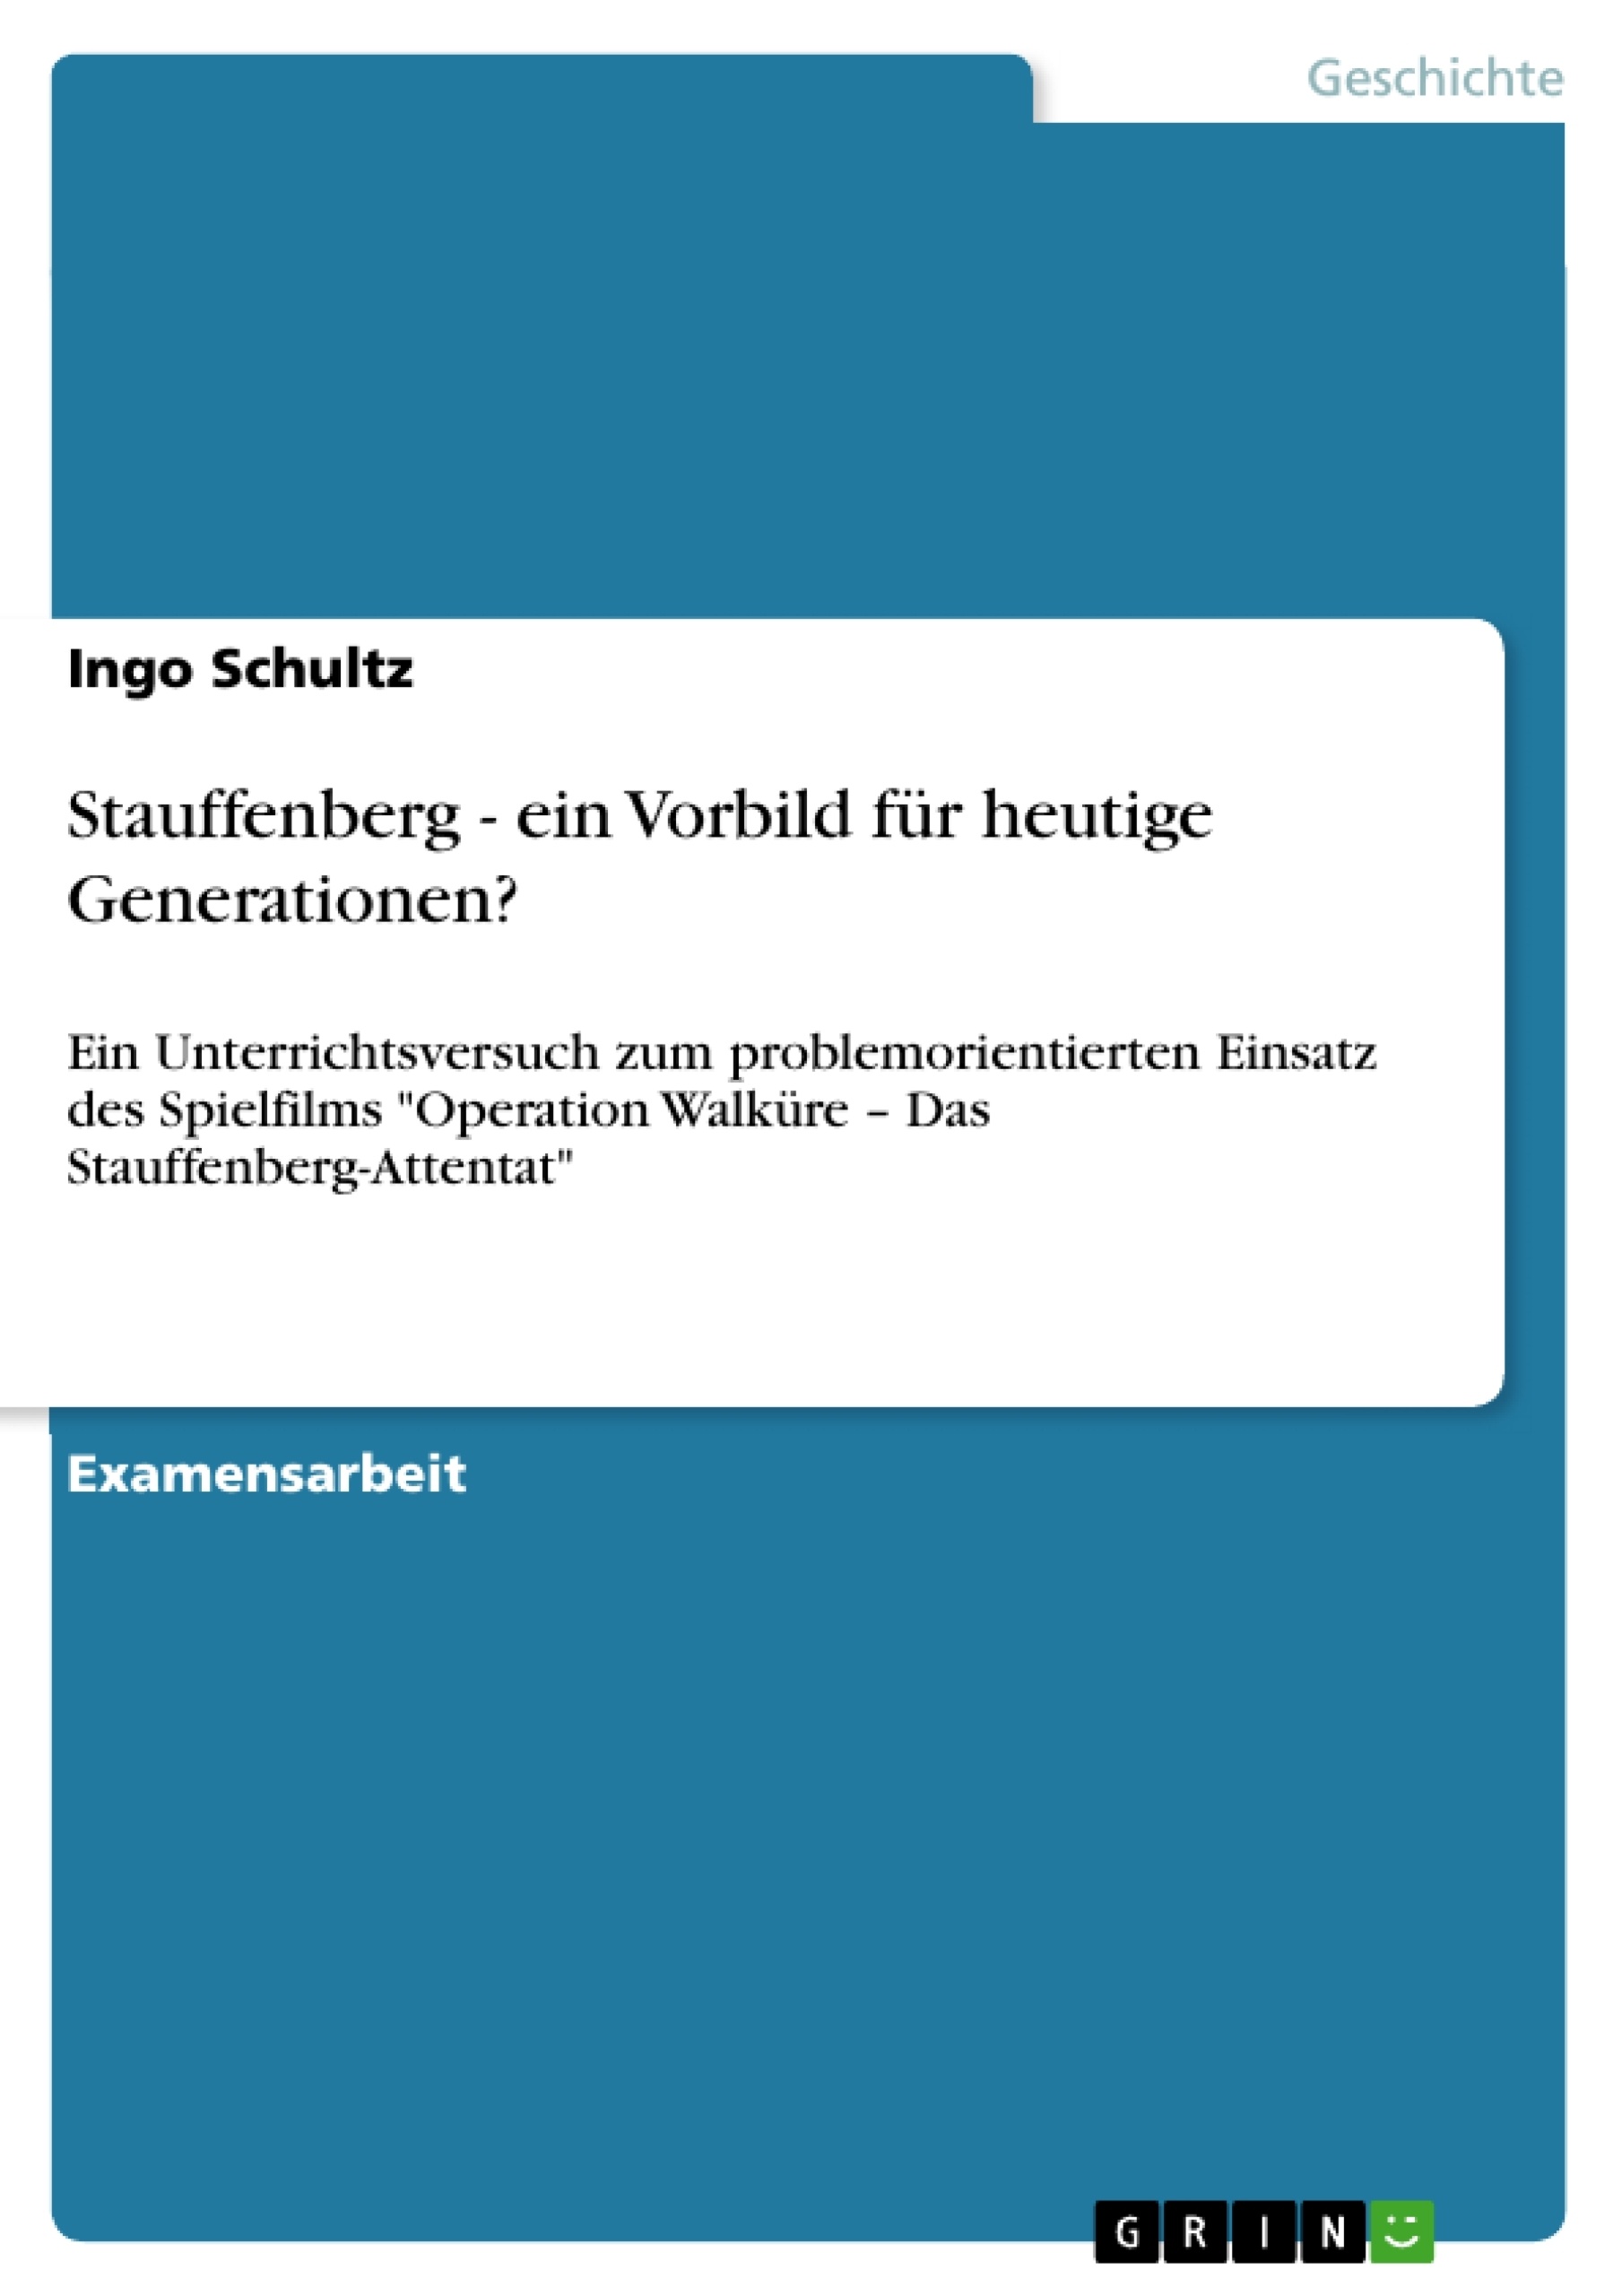 Title: Stauffenberg - ein Vorbild für heutige Generationen?